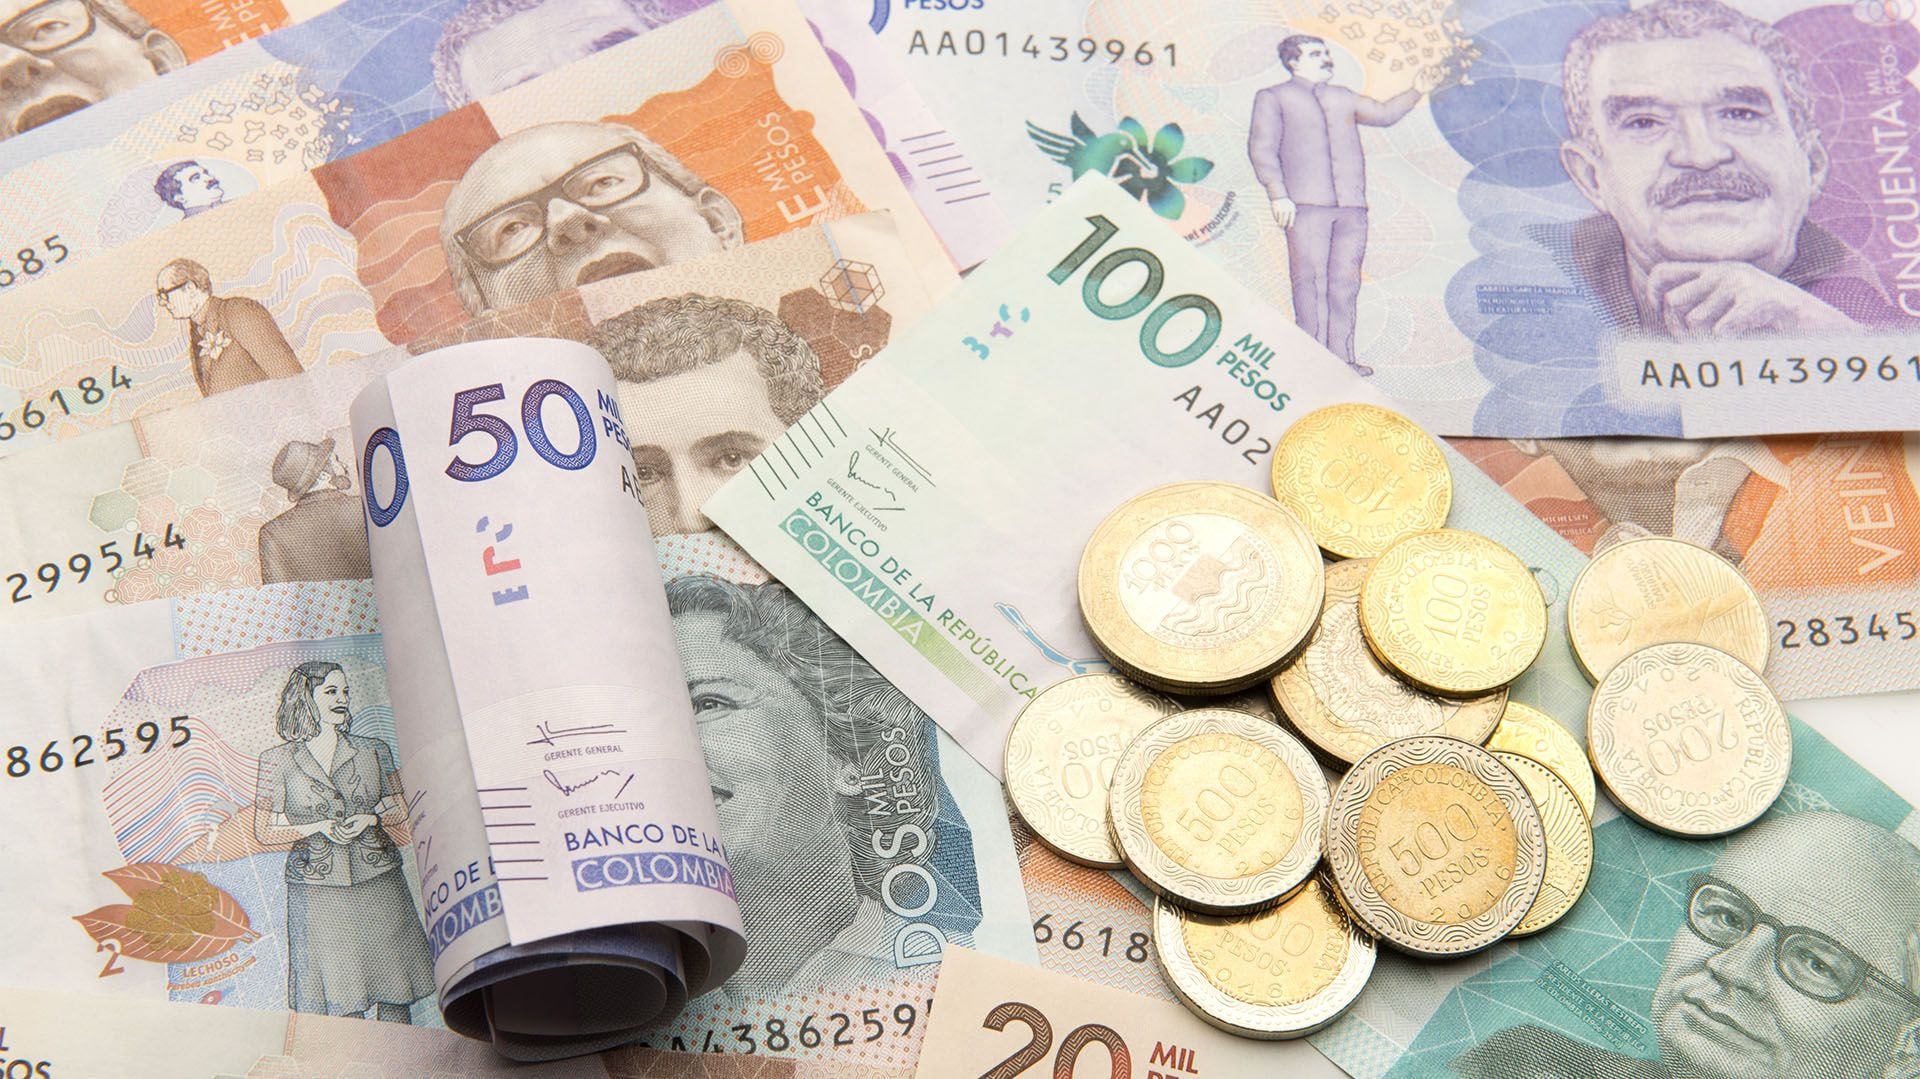 El tipo de cambio en Colombia ha estado reaccionando a los eventos políticos - crédito Shutterstock